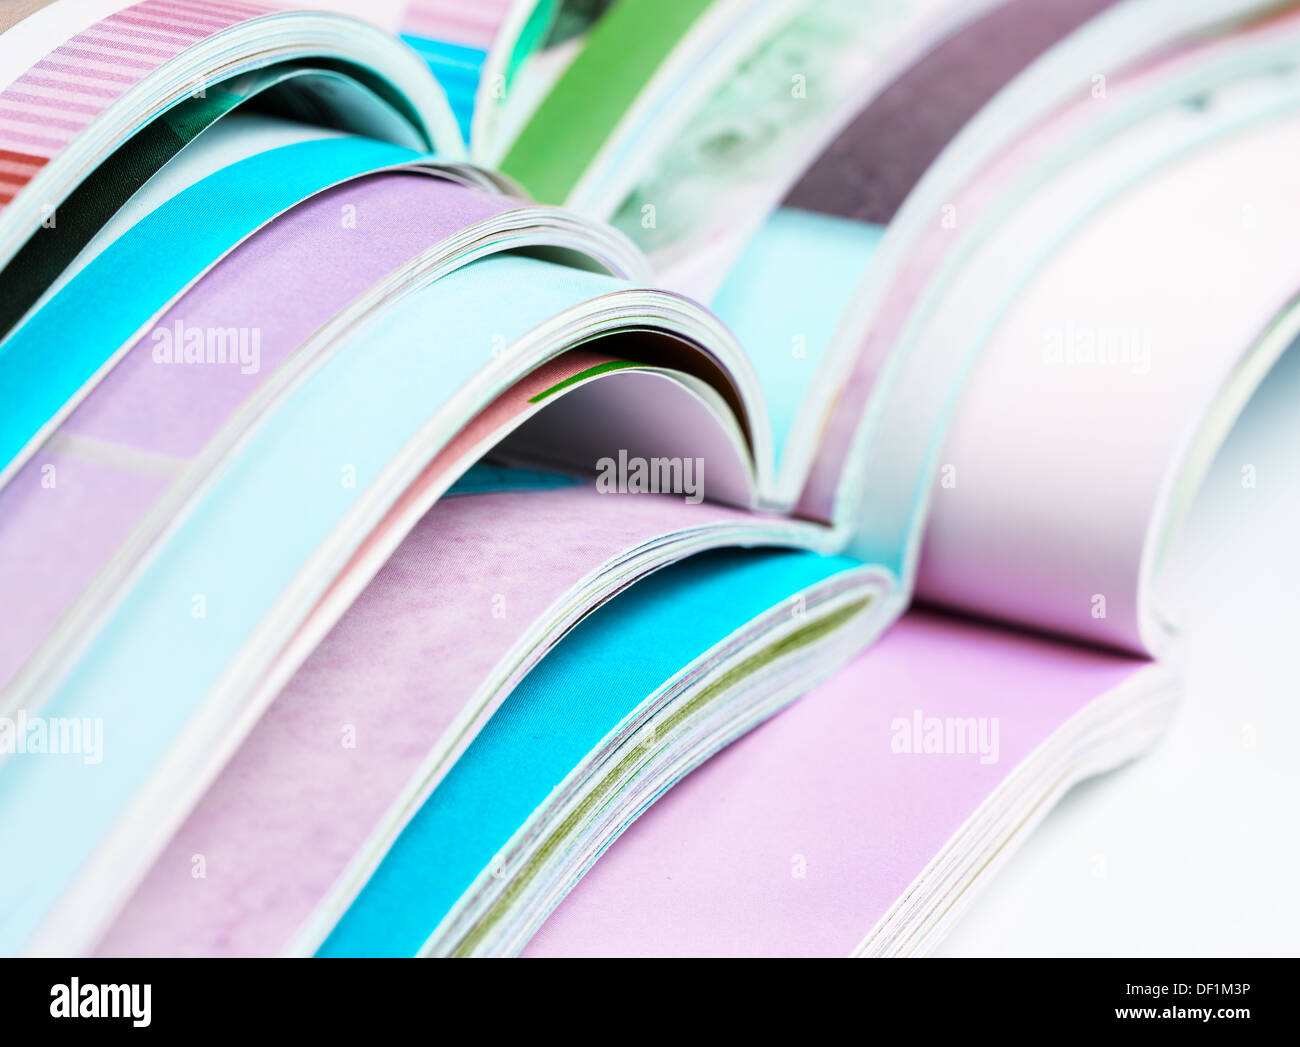 Pile of opened magazines Stock Photo